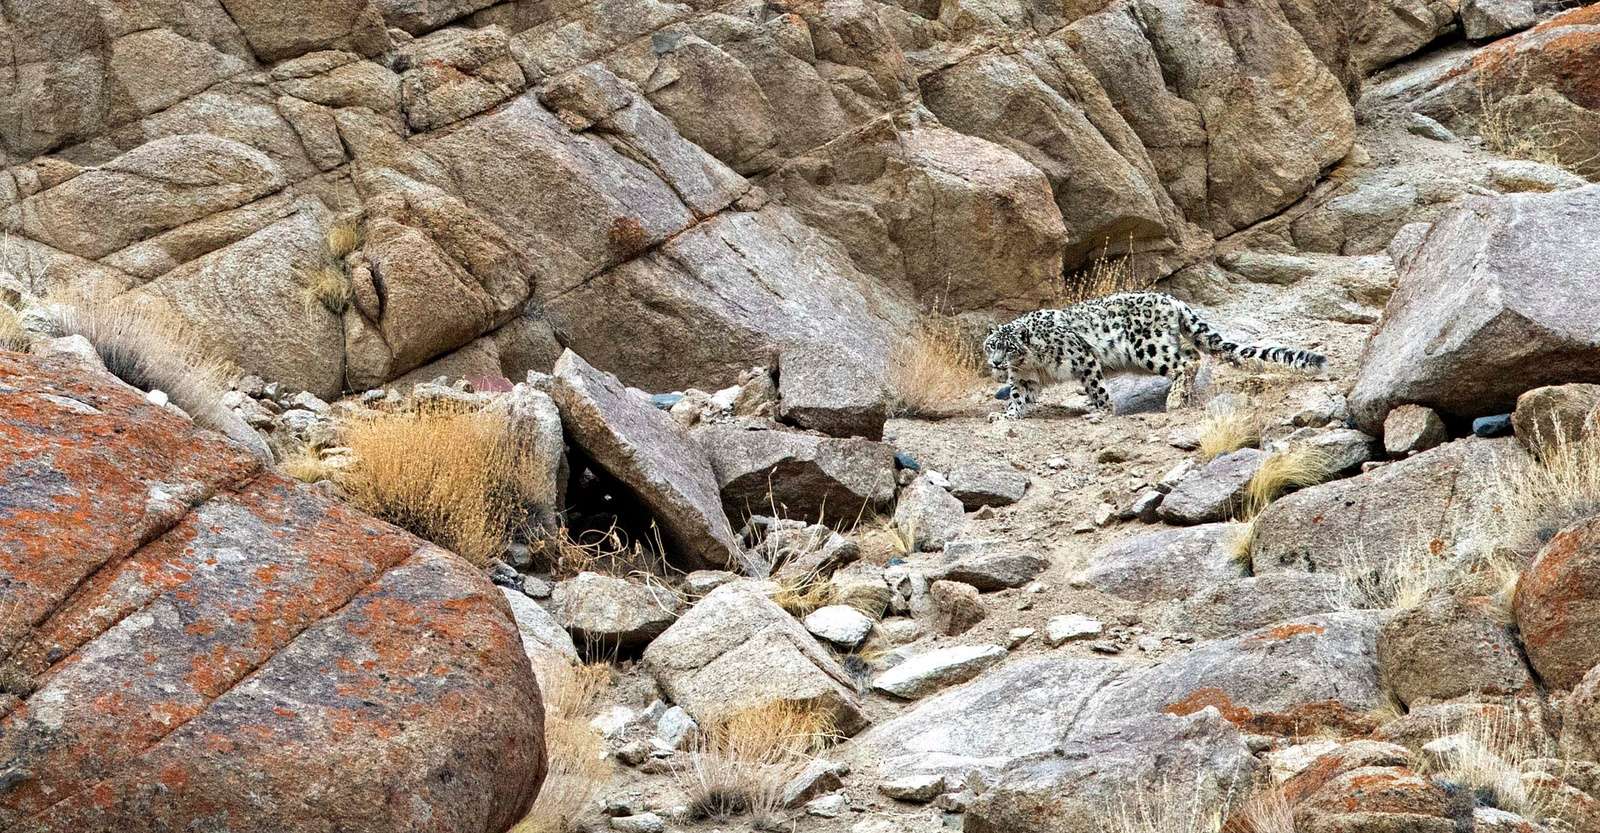 Snow leopard, Ladakh, India.